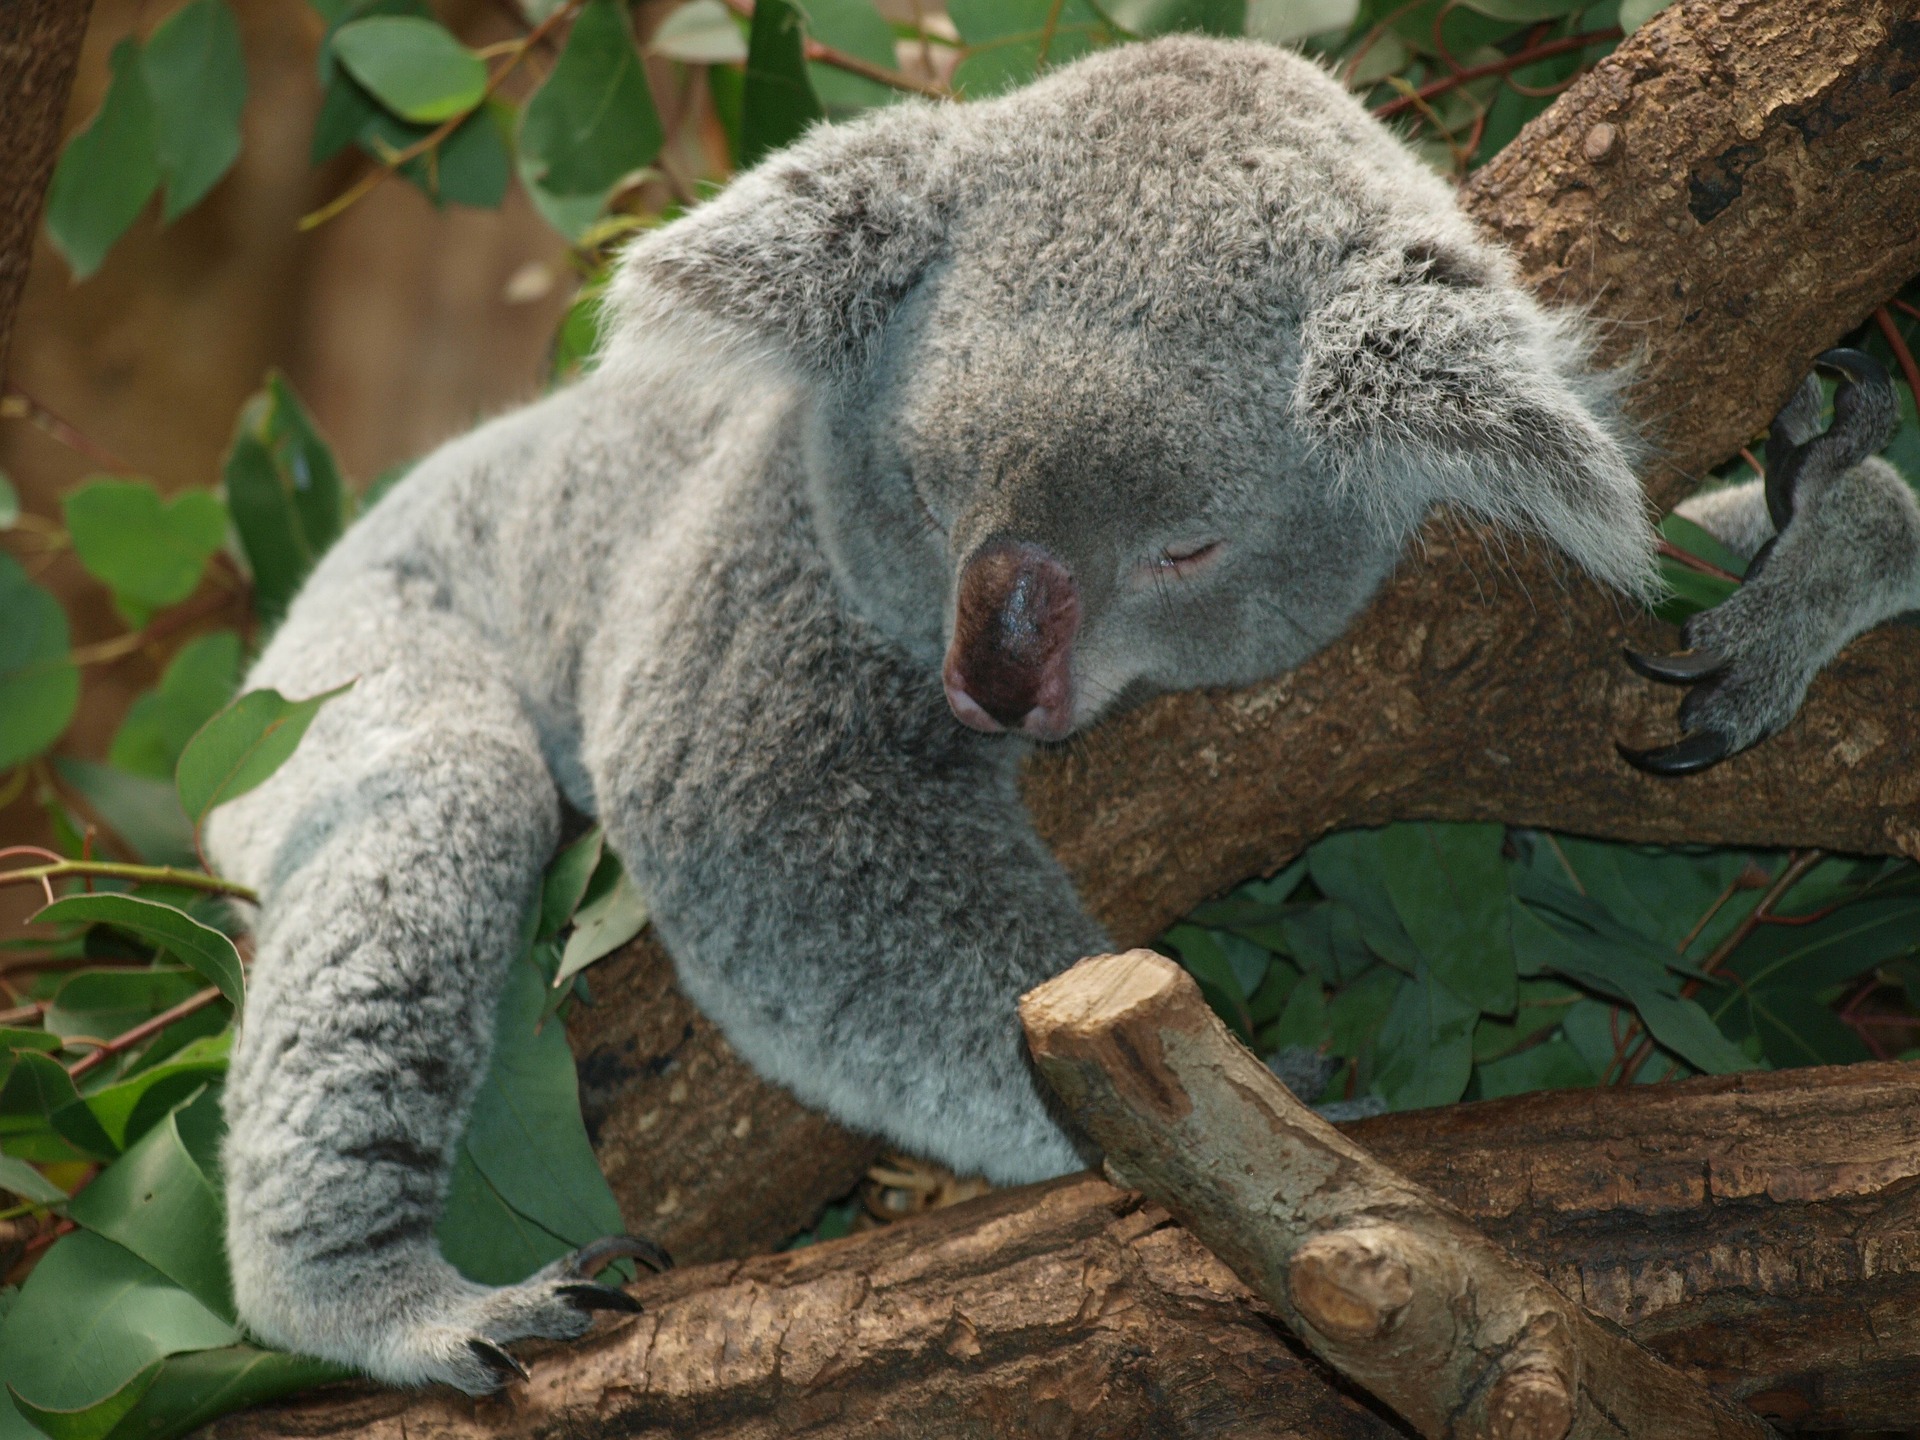 Du liebst Koalabären genau so wie ich, dann bist du in Australien richtig aufgehoben